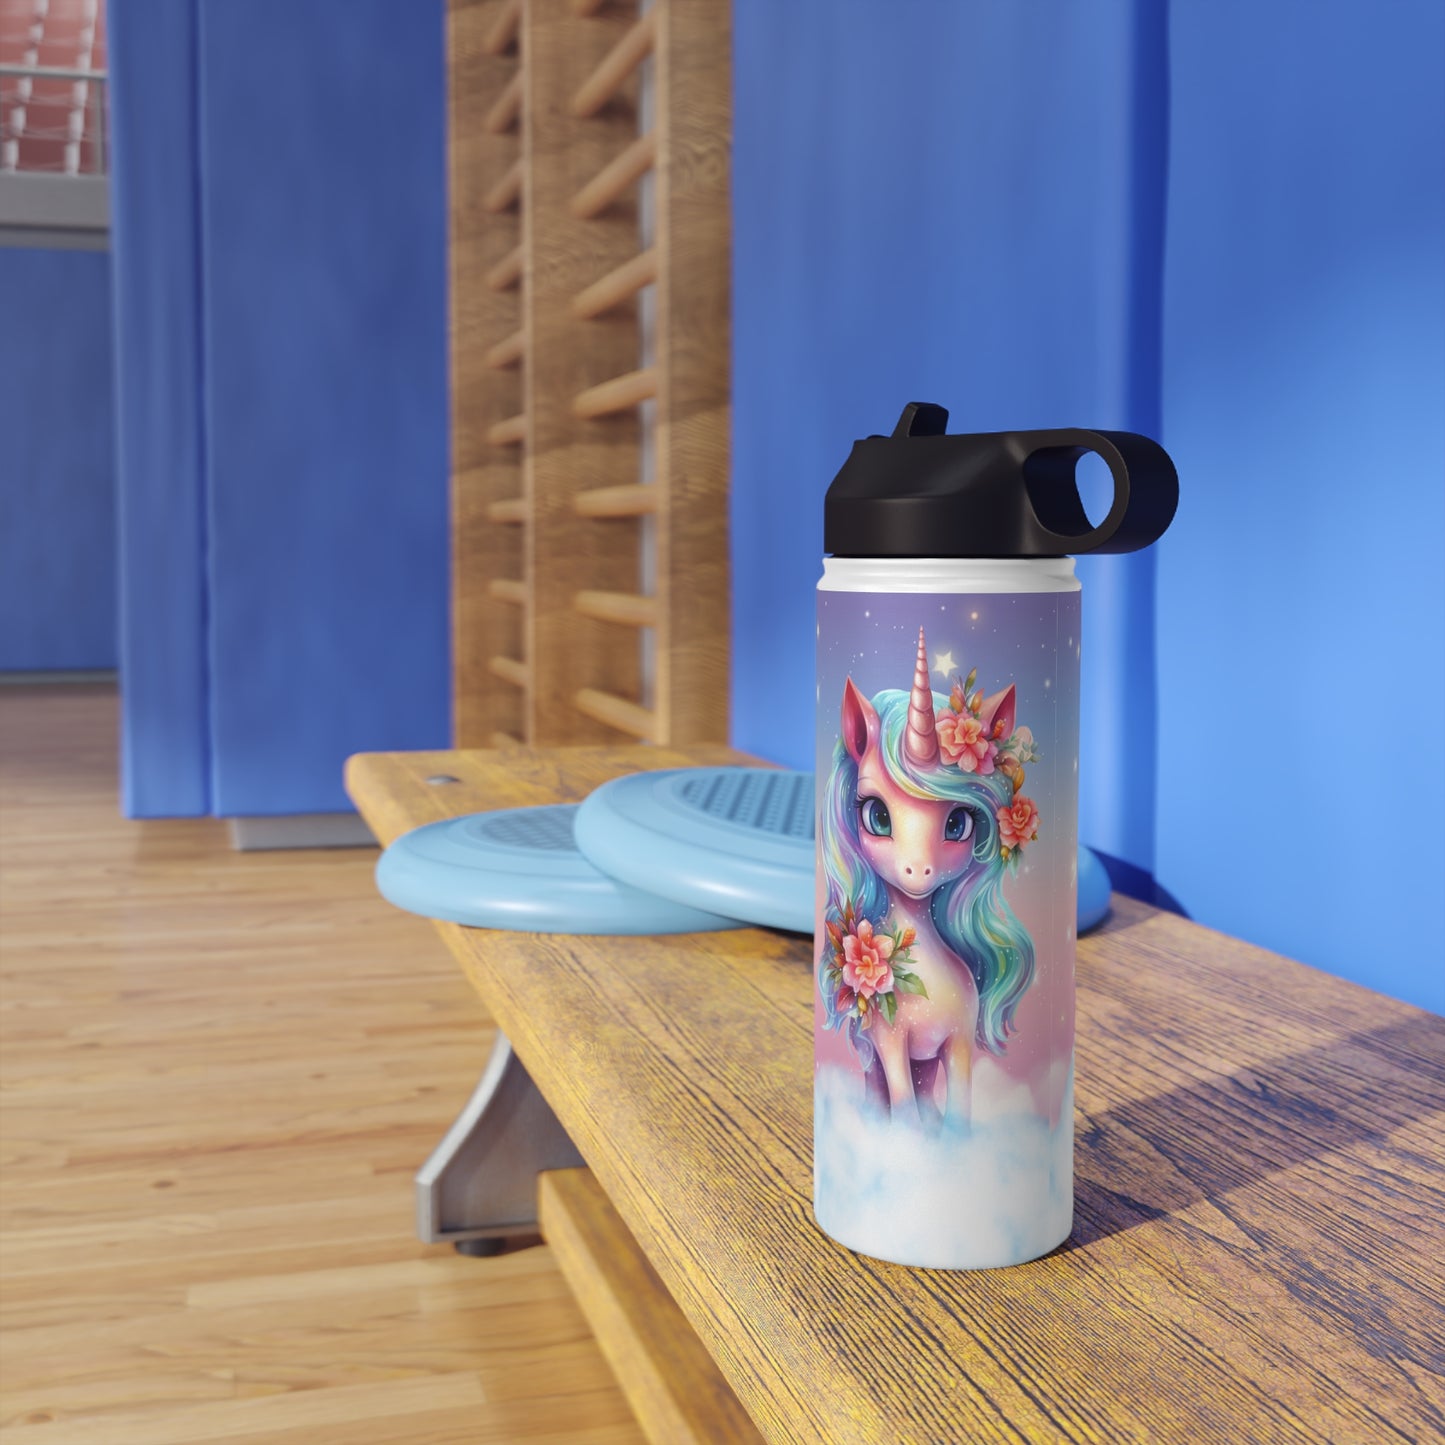 Stainless Steel Water Bottle - Rainbow Unicorn